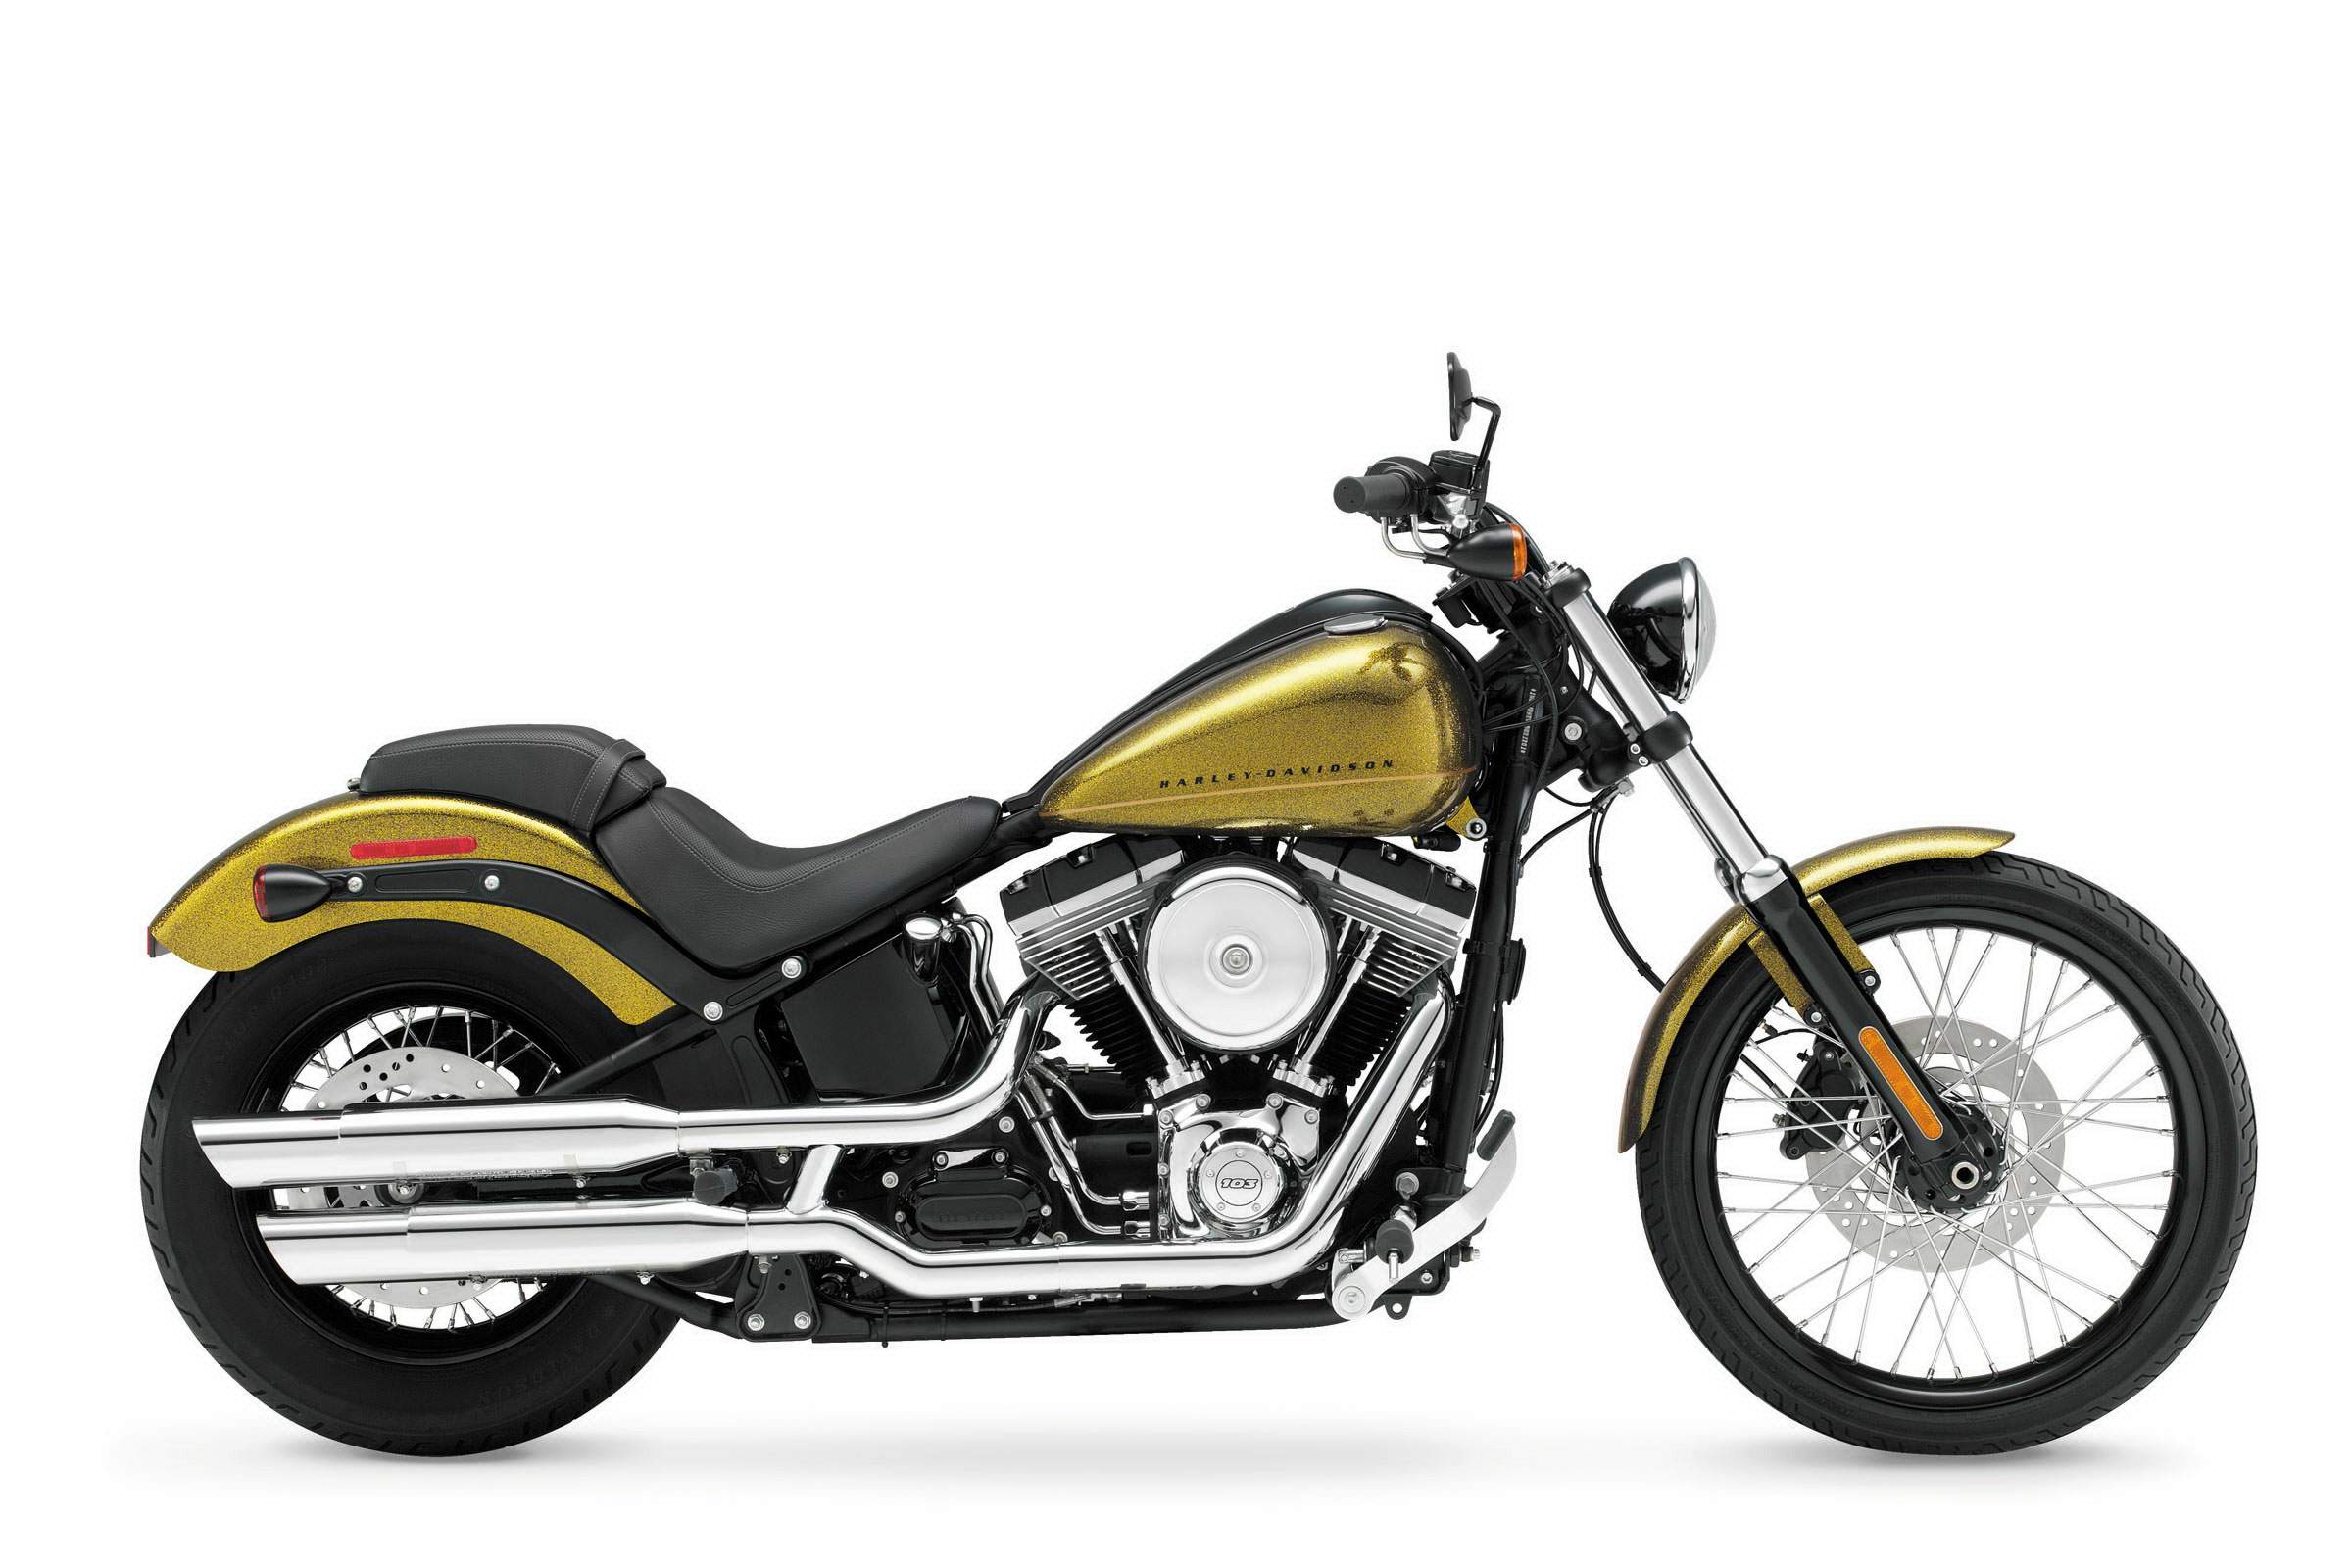 Especificaciones técnicas Harley-Davidson Harley Davidson FXS Blackline (2012-13)